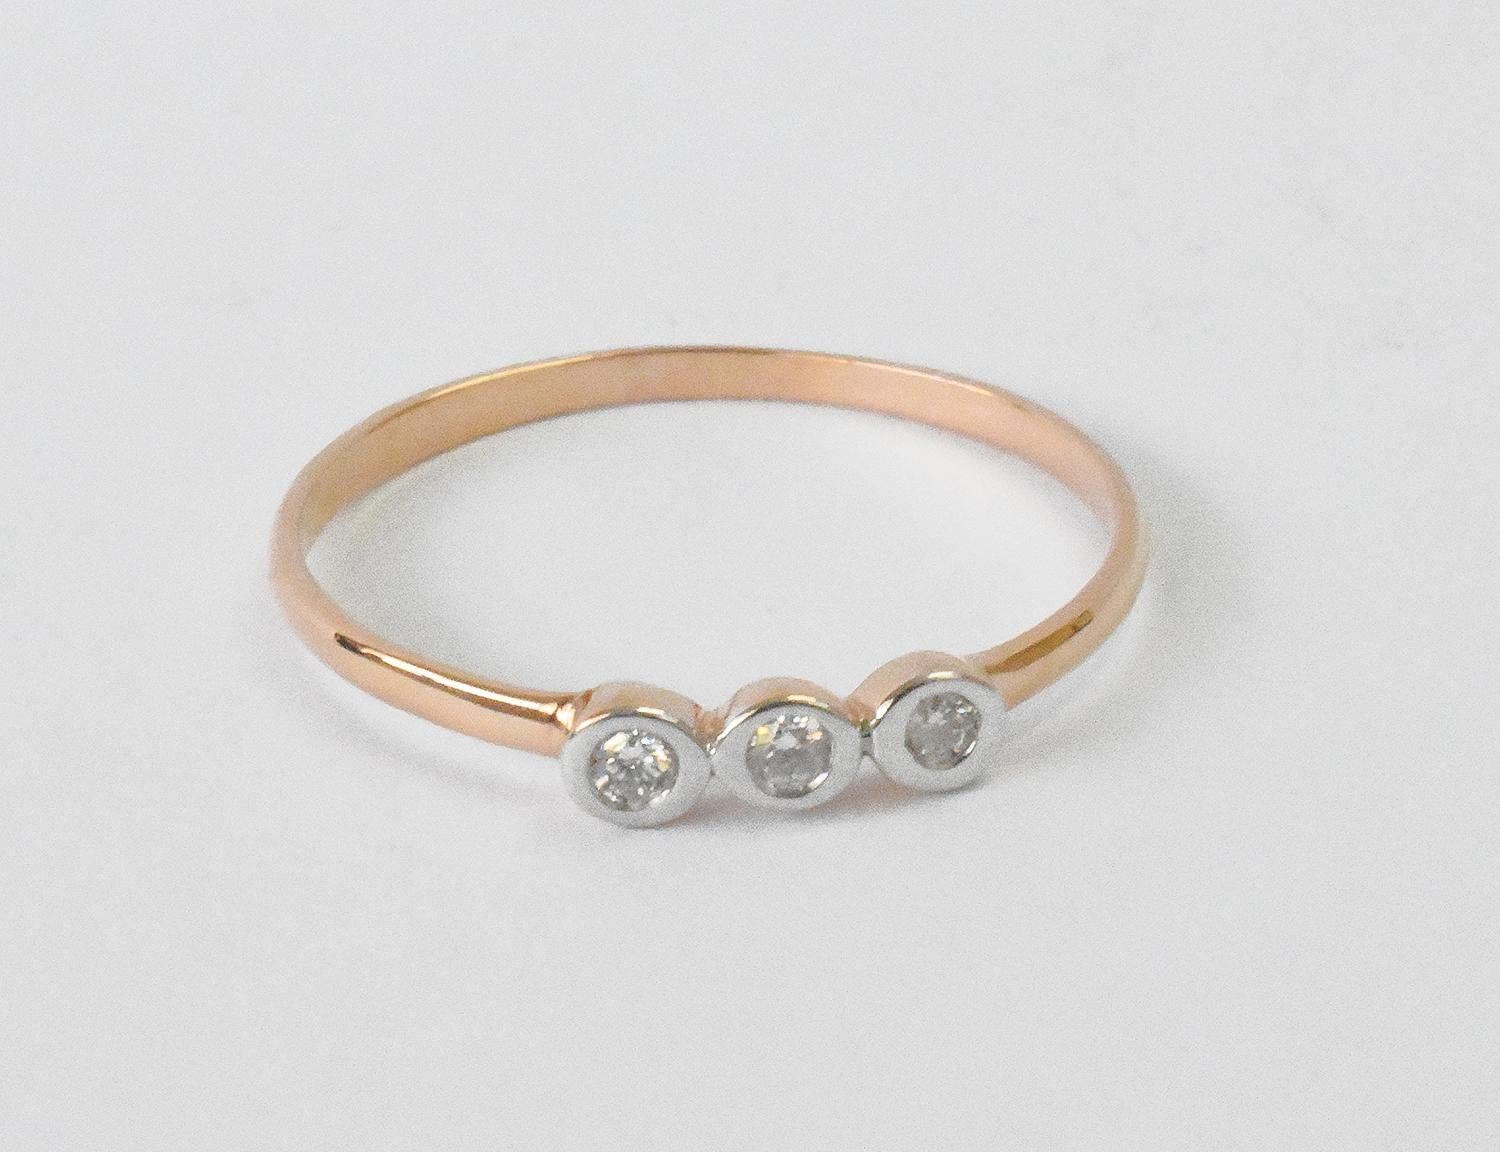 For Sale:  18k Gold Diamond 1.9 mm Ring Bezel Setting Three Diamond Ring Trio Diamond Ring 2